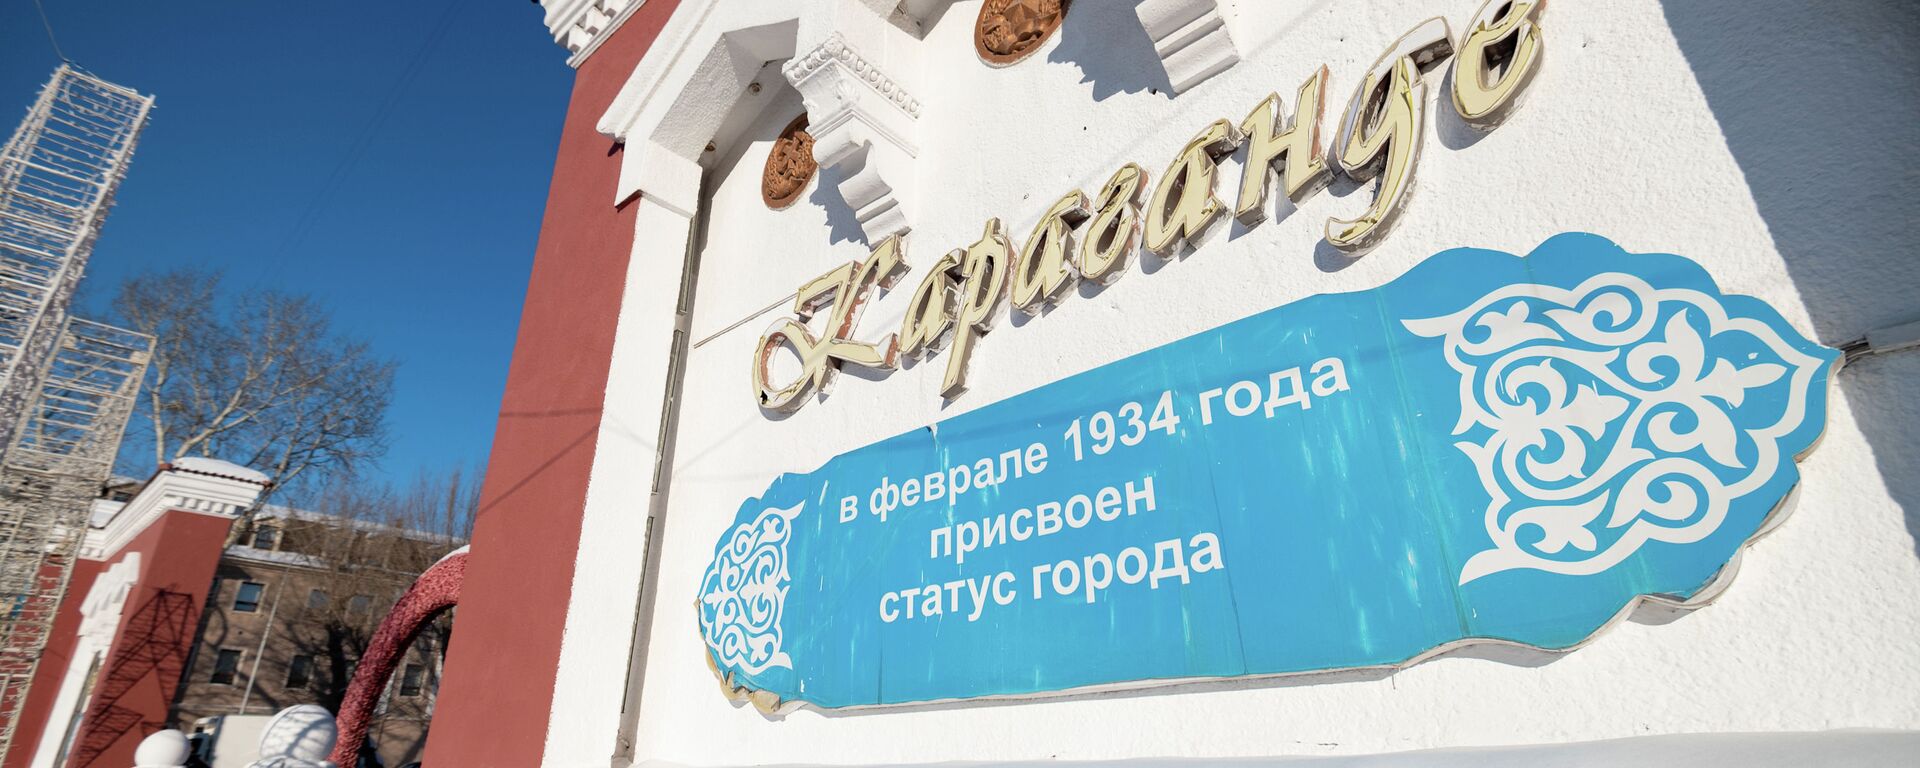 Виды города Караганда - Sputnik Қазақстан, 1920, 08.07.2021